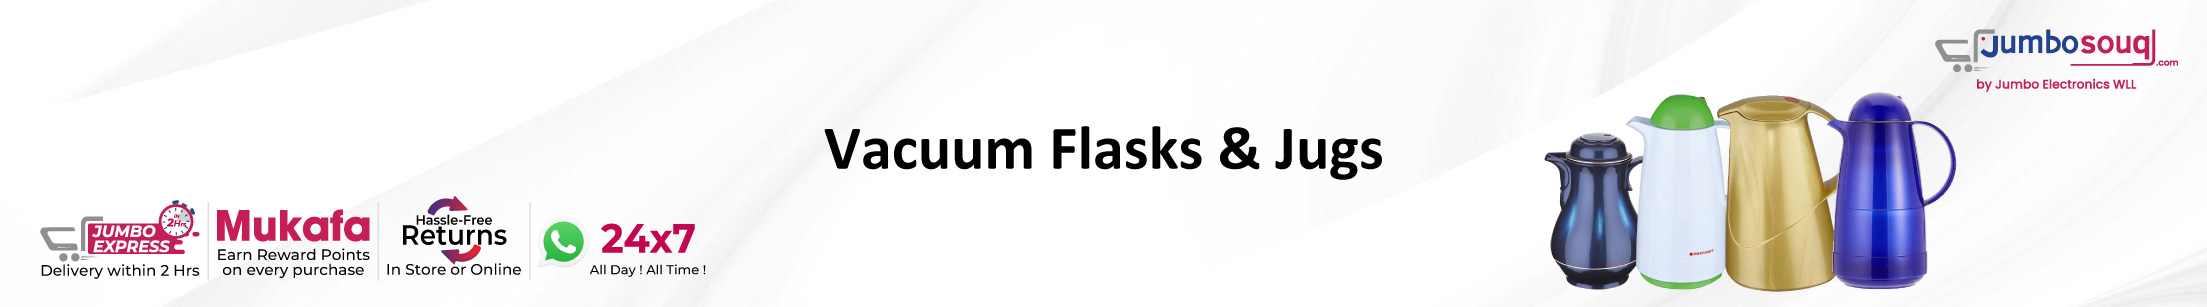 Vacuum Flasks & Jugs